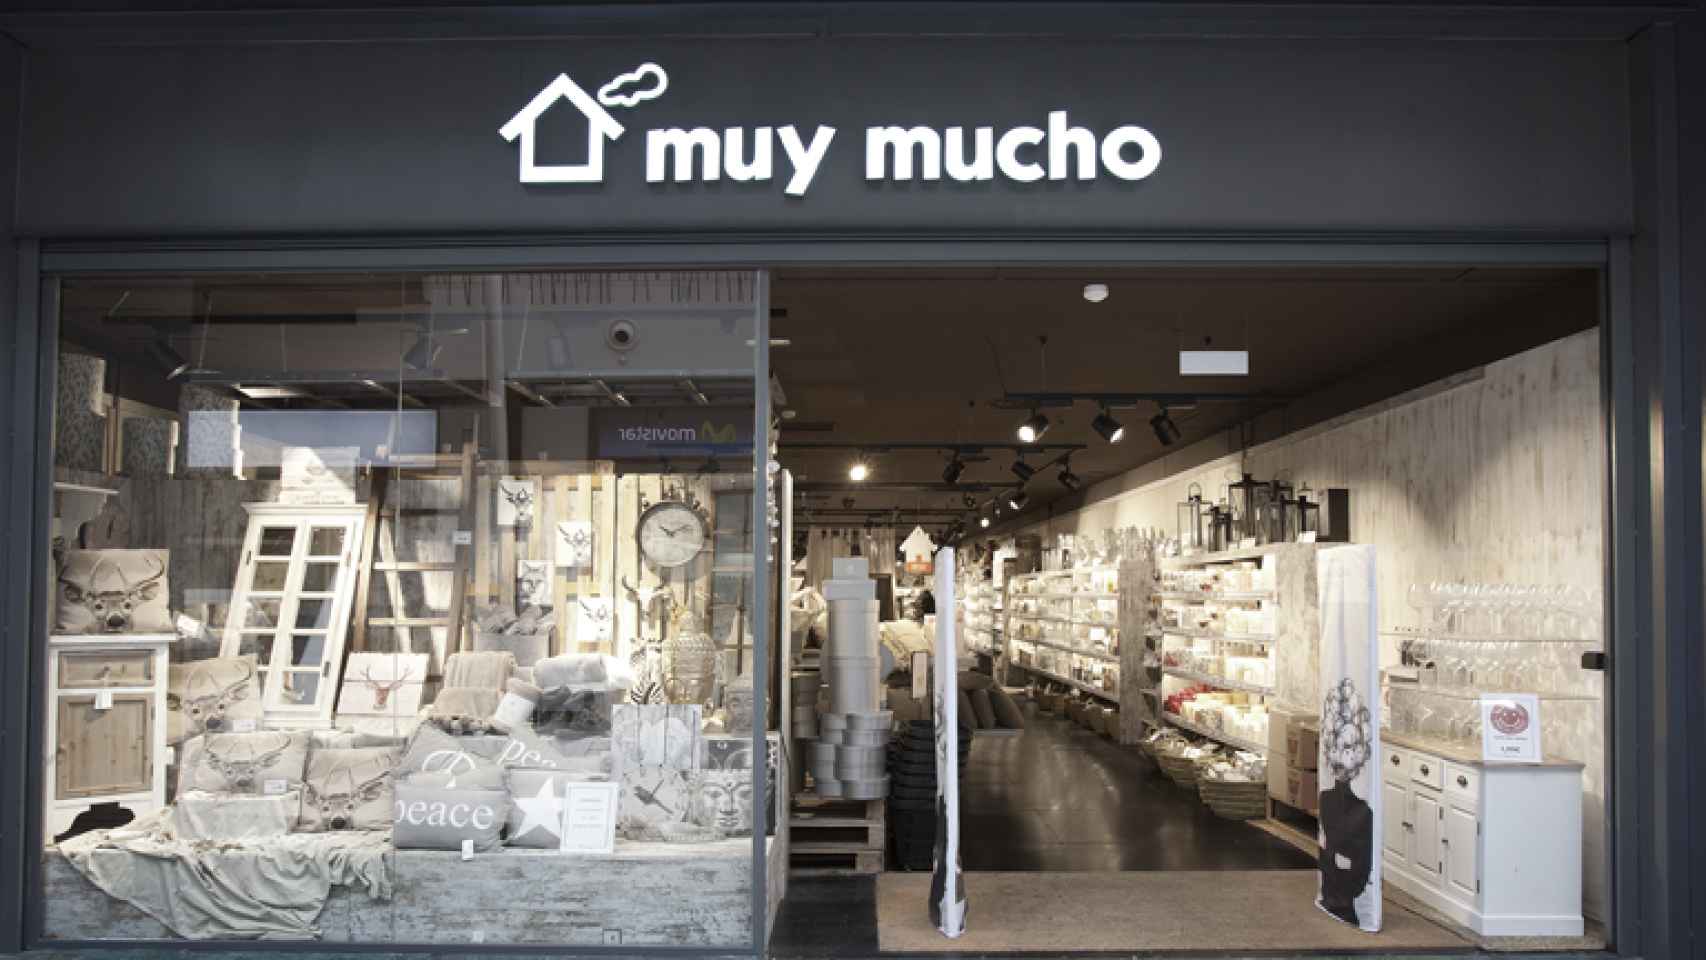 La tienda de Muy mucho en el centro comercial Islazul, Madrid.